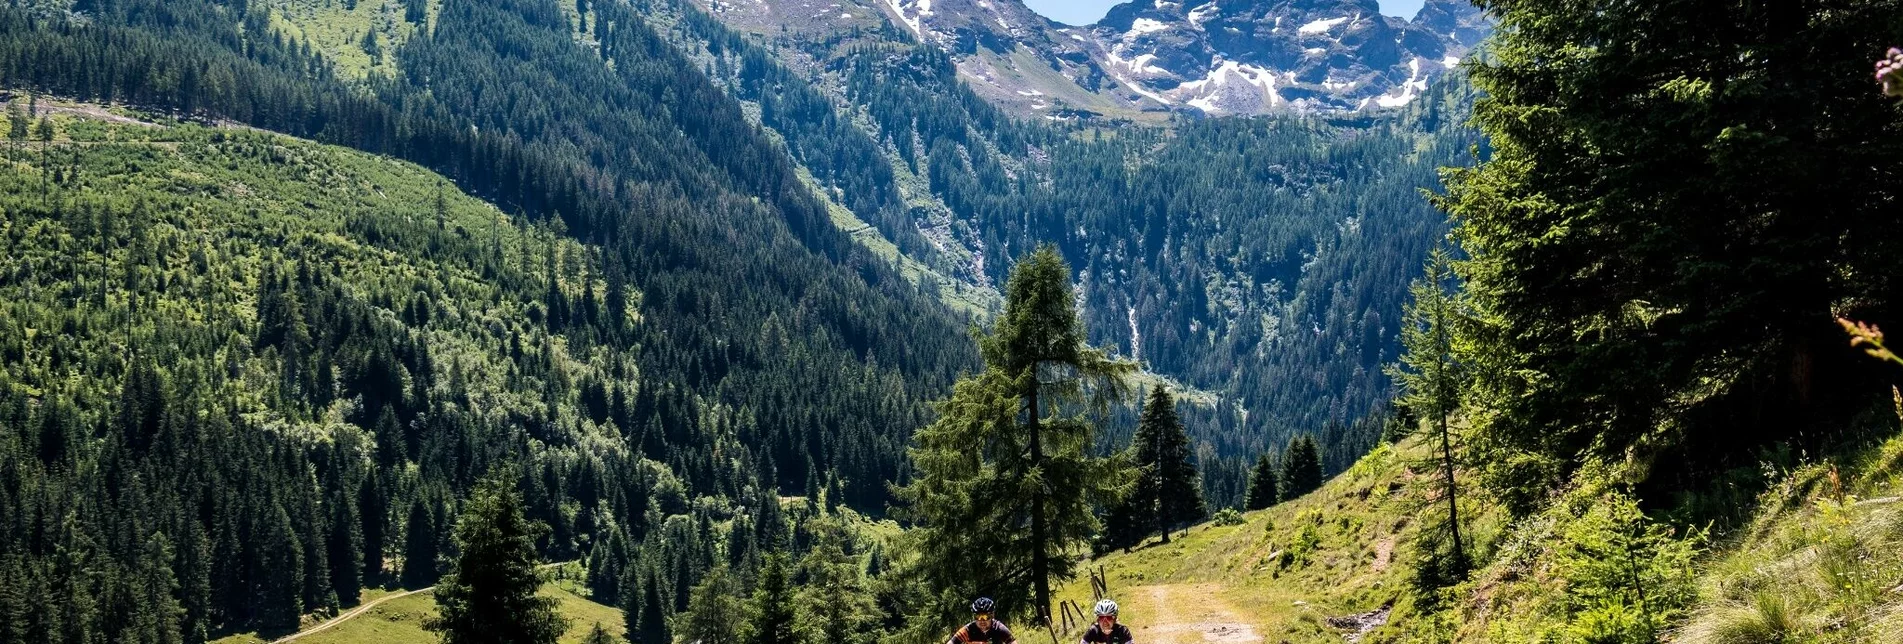 Mountainbike Gumpental Runde | 91 - Touren-Impression #1 | © Erlebnisregion Schladming-Dachstein